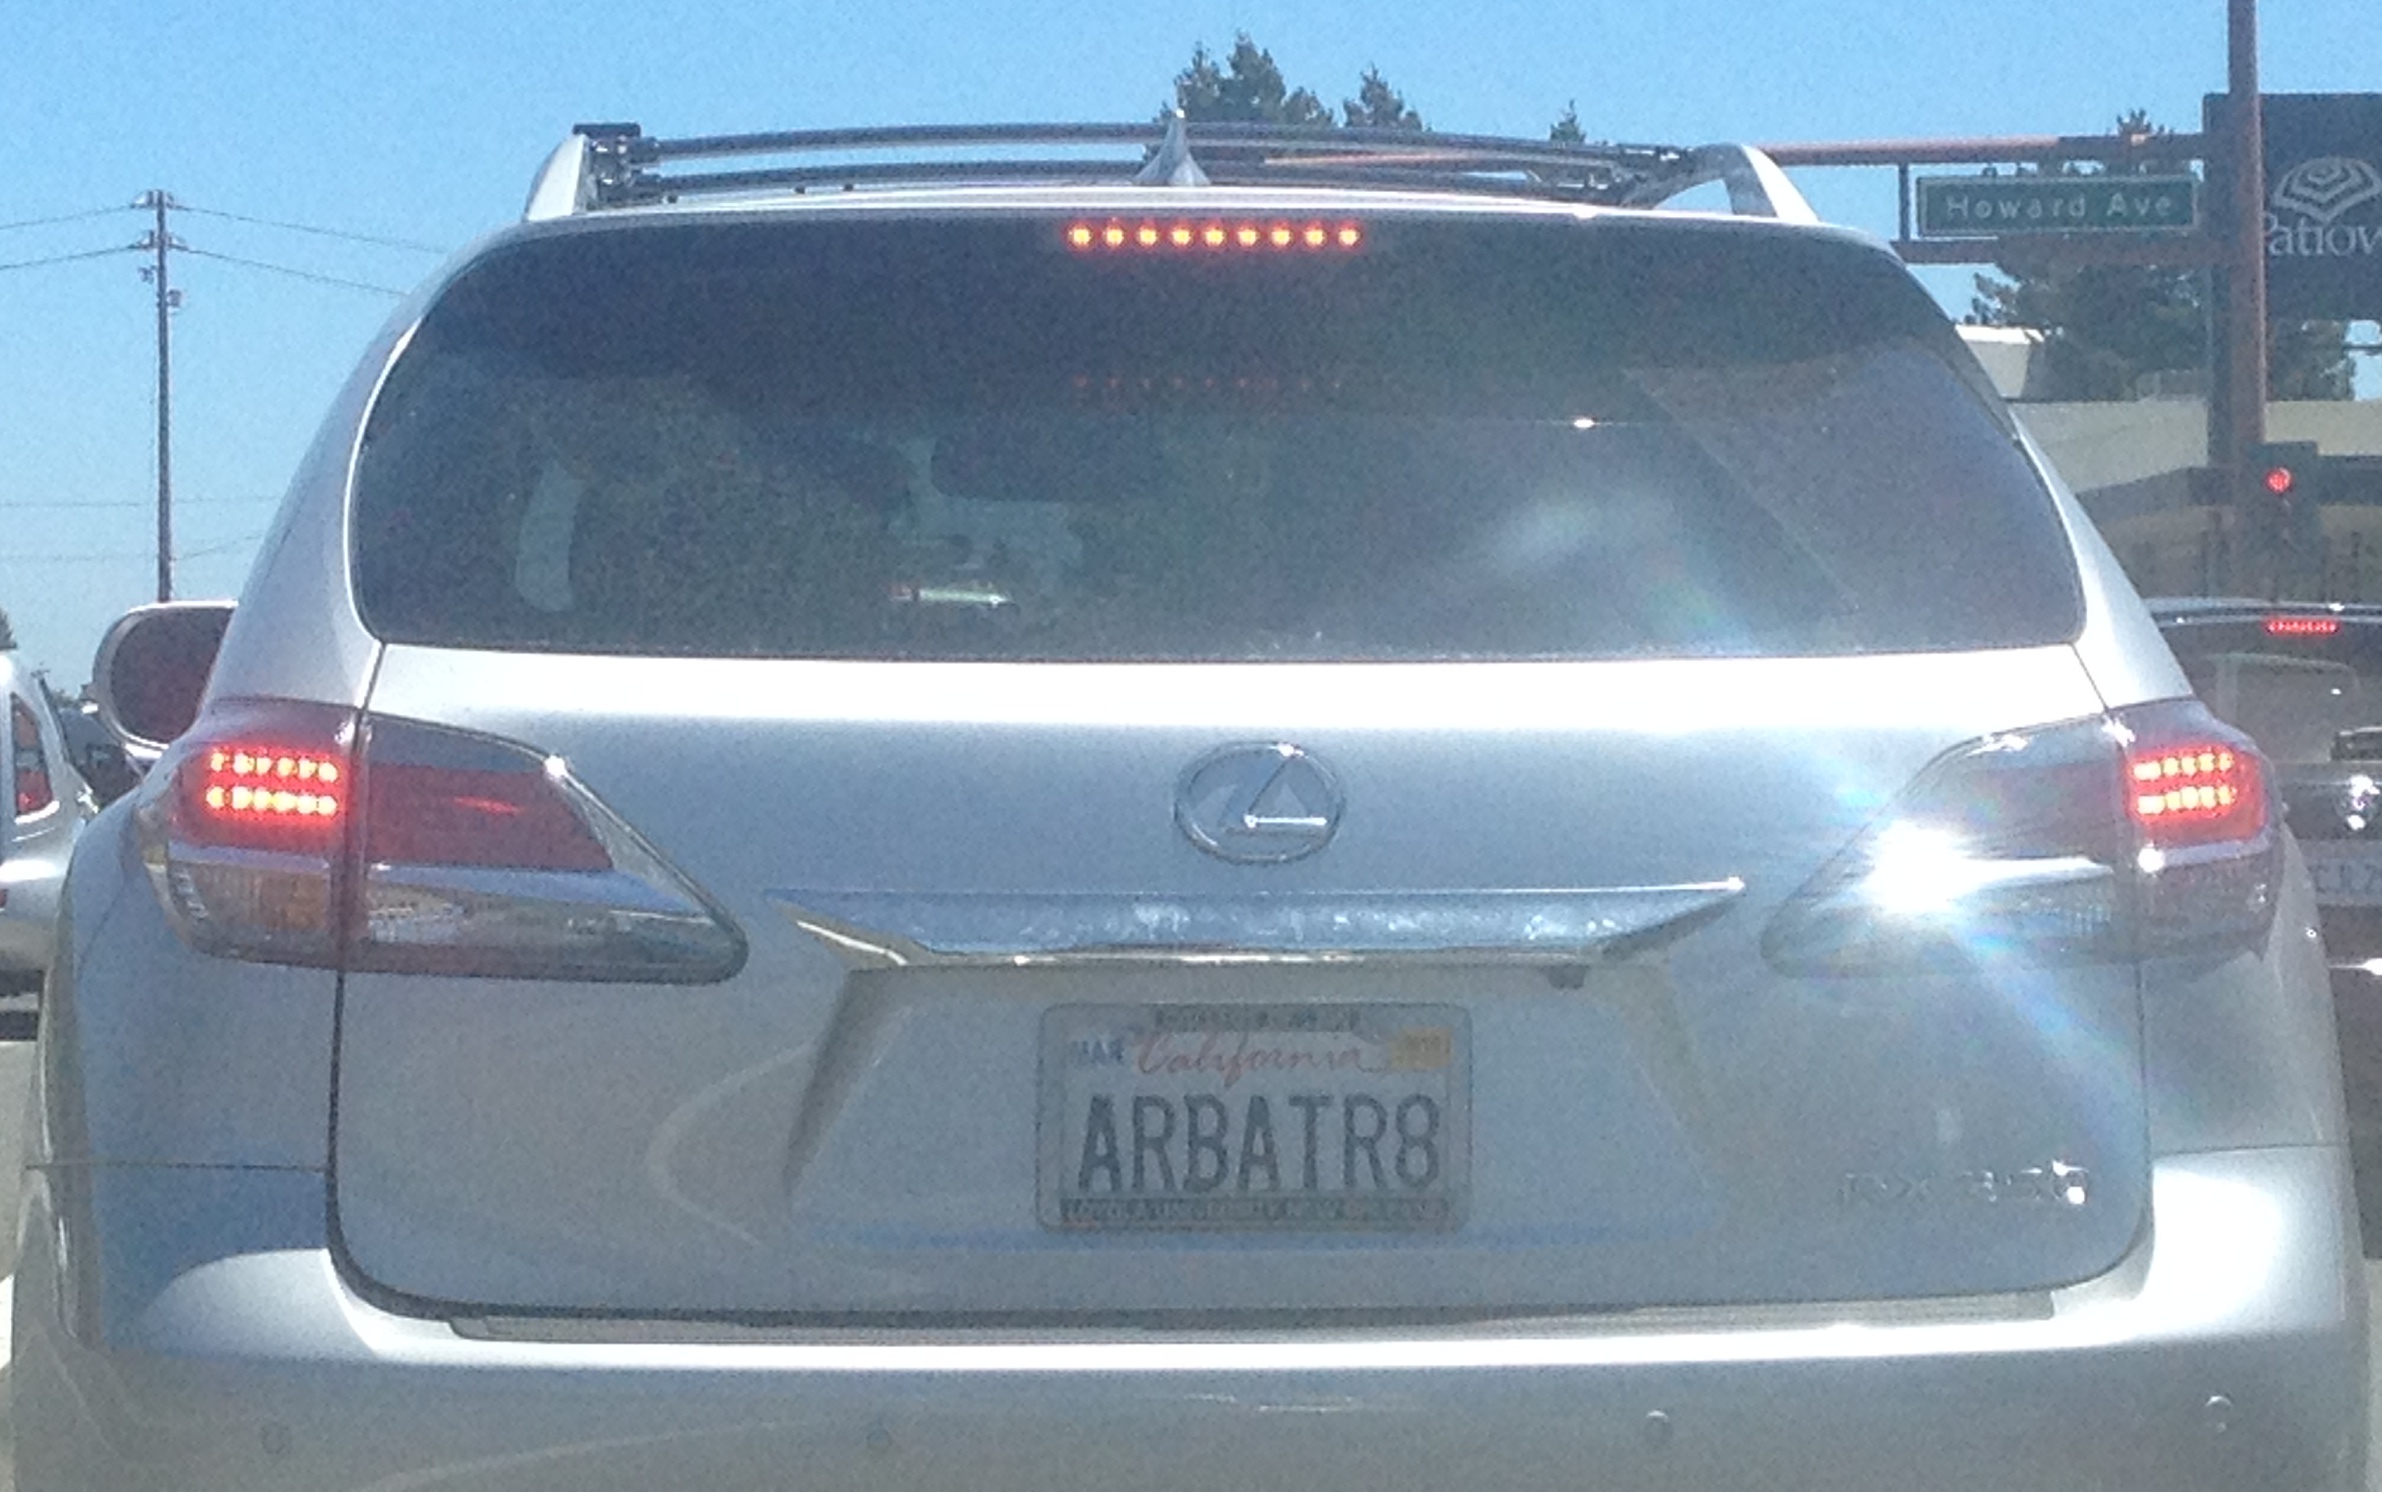 Arbatr8